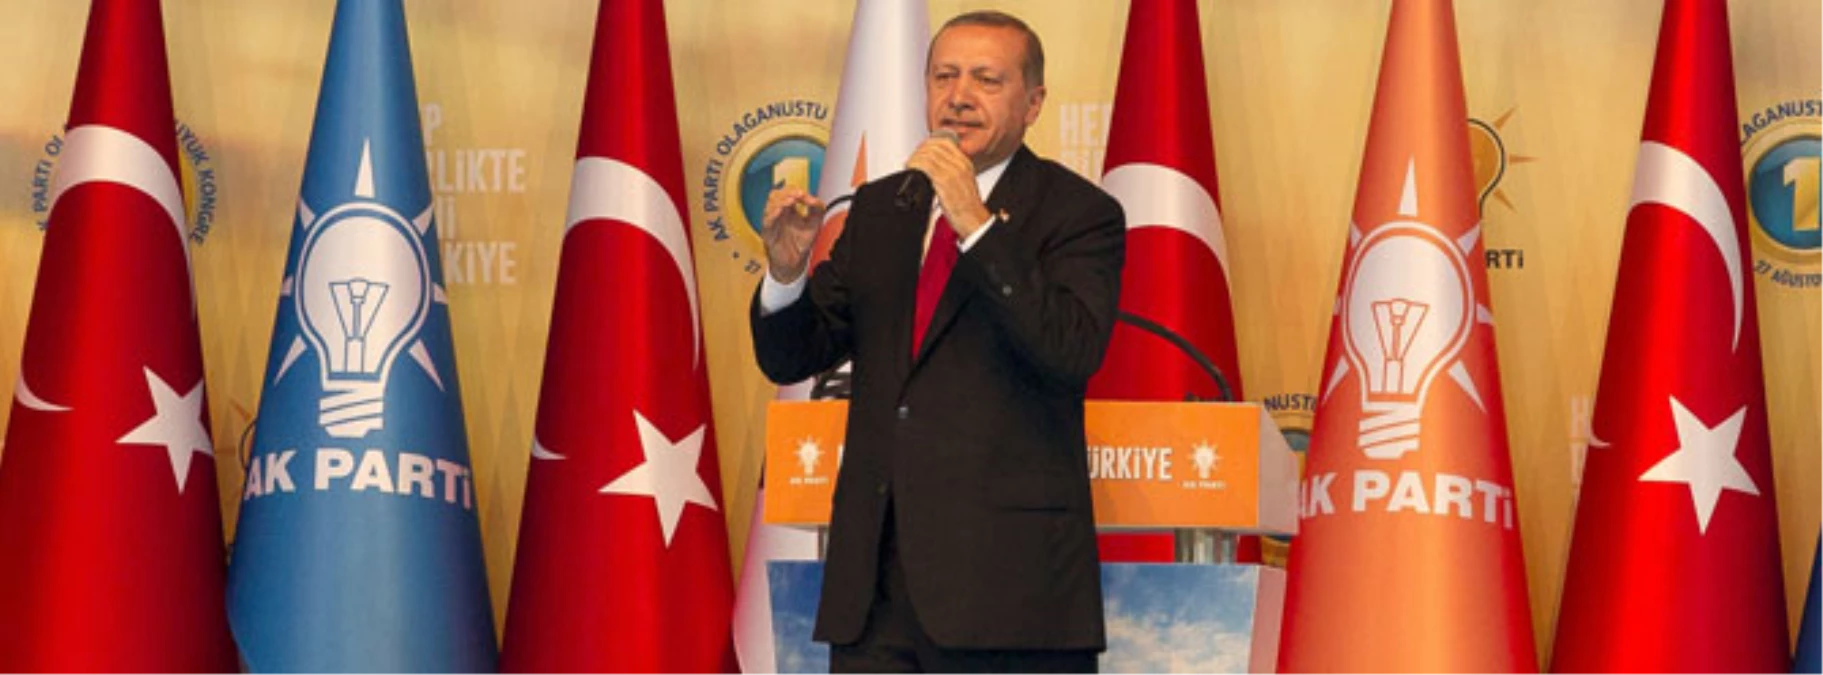 Erdoğan: "Artık bağımlılık, kölelik dönemi bitti" -